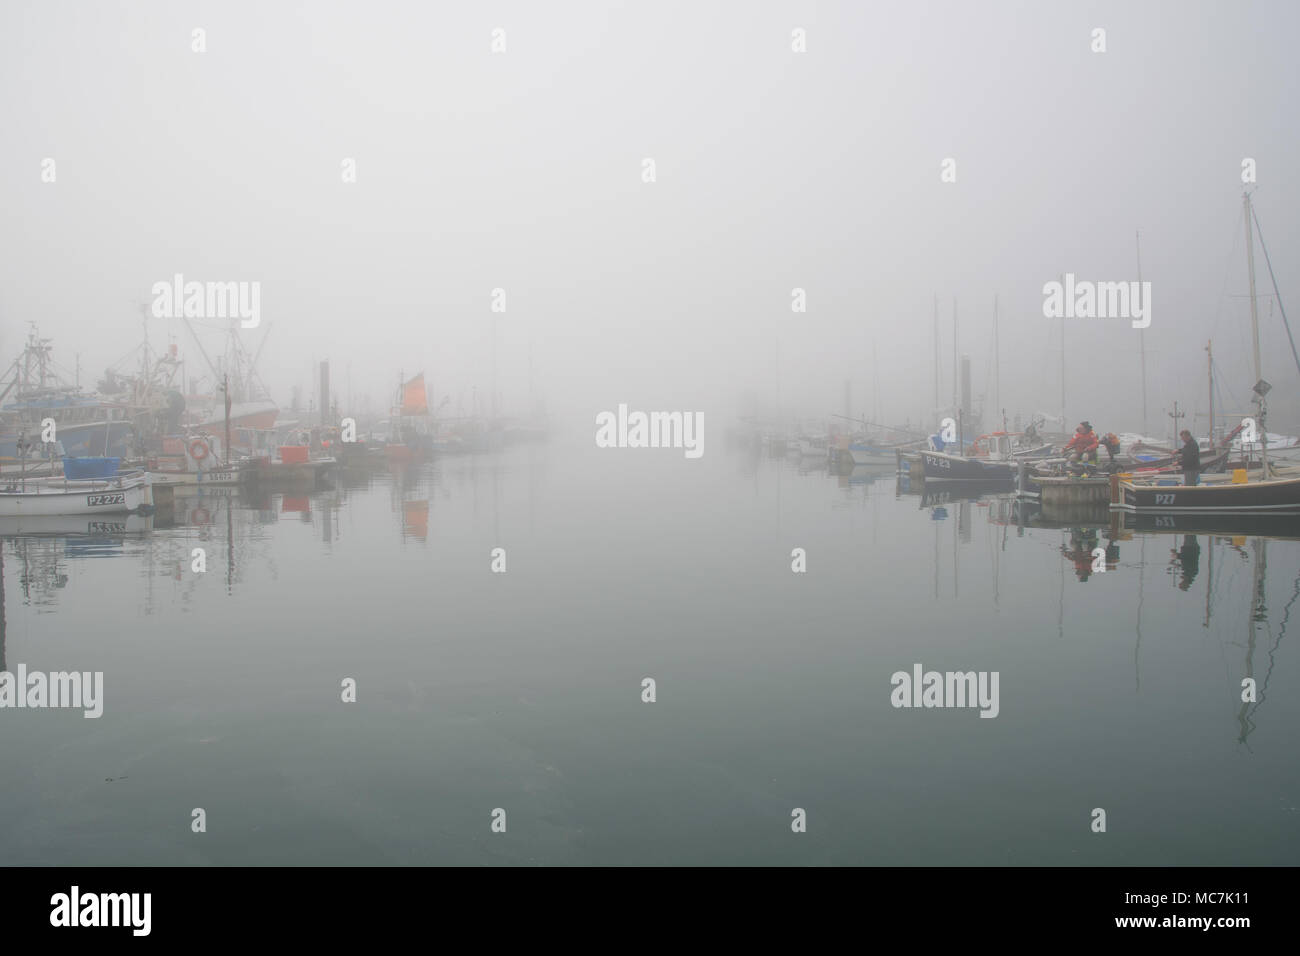 Newlyn, Cornwall, UK. 14 avril 2018. Météo britannique. Visbility pauvres de la flotte de pêche à Newlyn ce matin, avec le soleil de la difficulté à percer la brume matinale. Banque D'Images